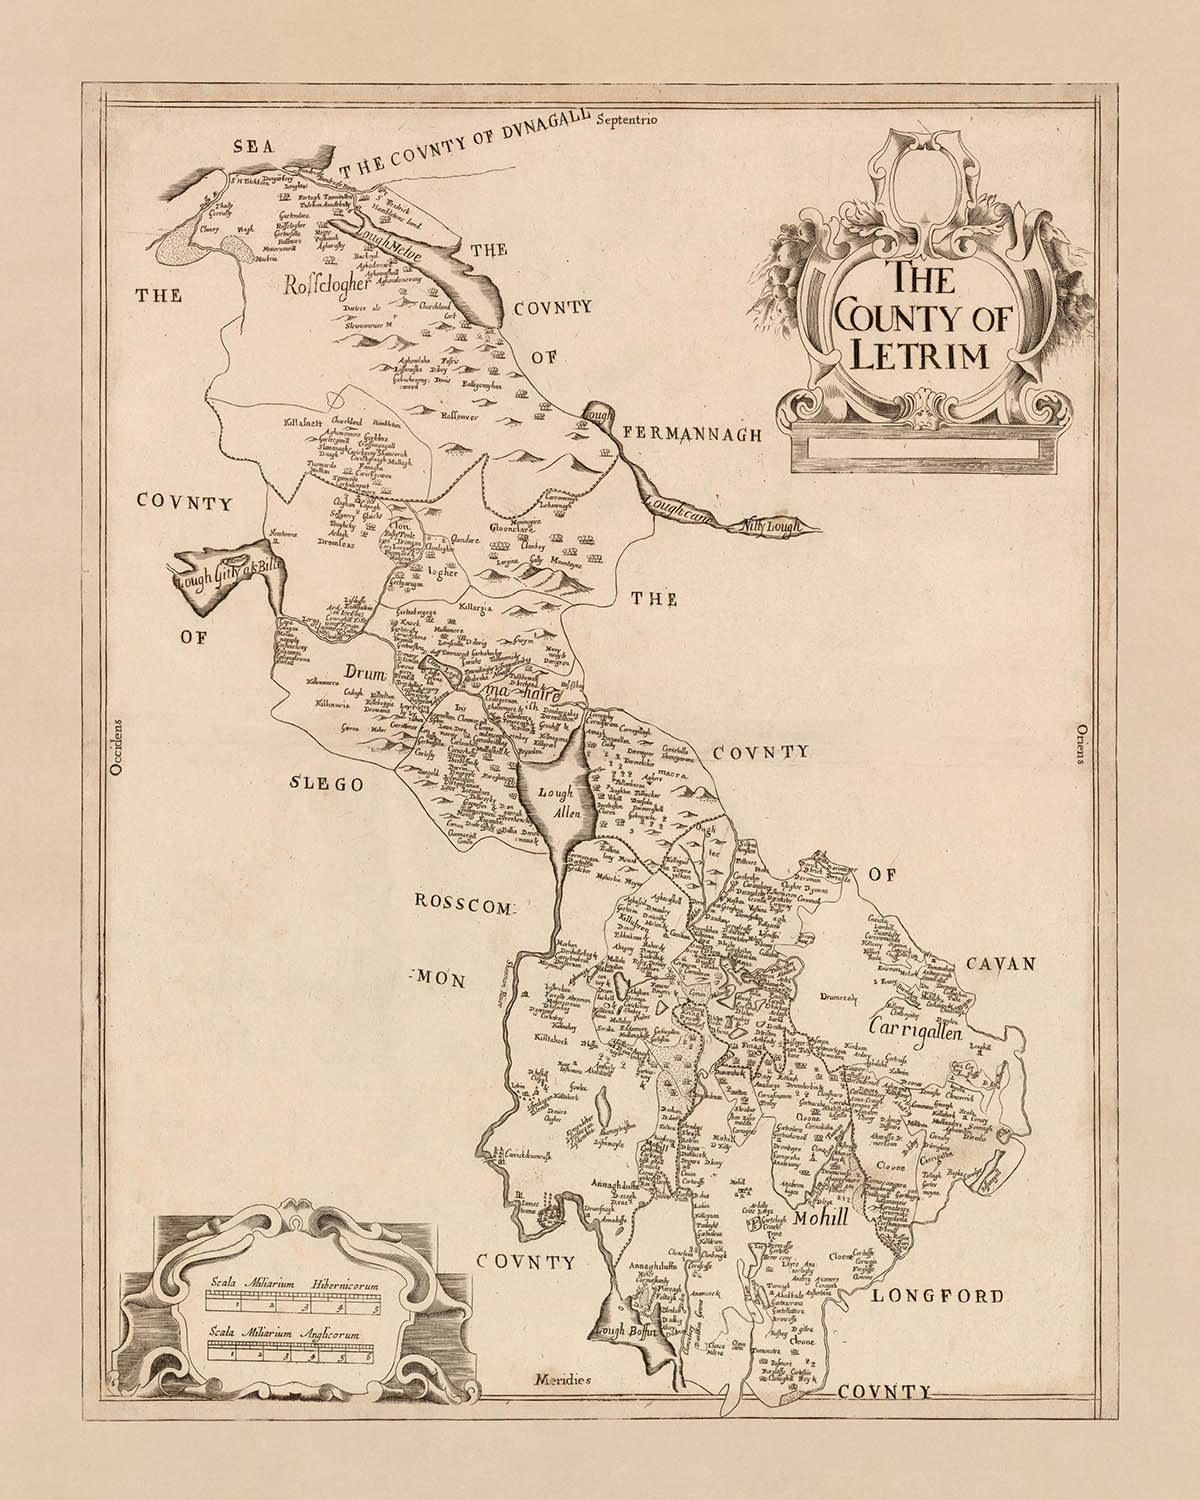 Ancienne carte du comté de Leitrim par Petty, 1685 : Carrick-on-Shannon, Jamestown, Leitrim, enquête vers le bas, données politiques et physiques détaillées